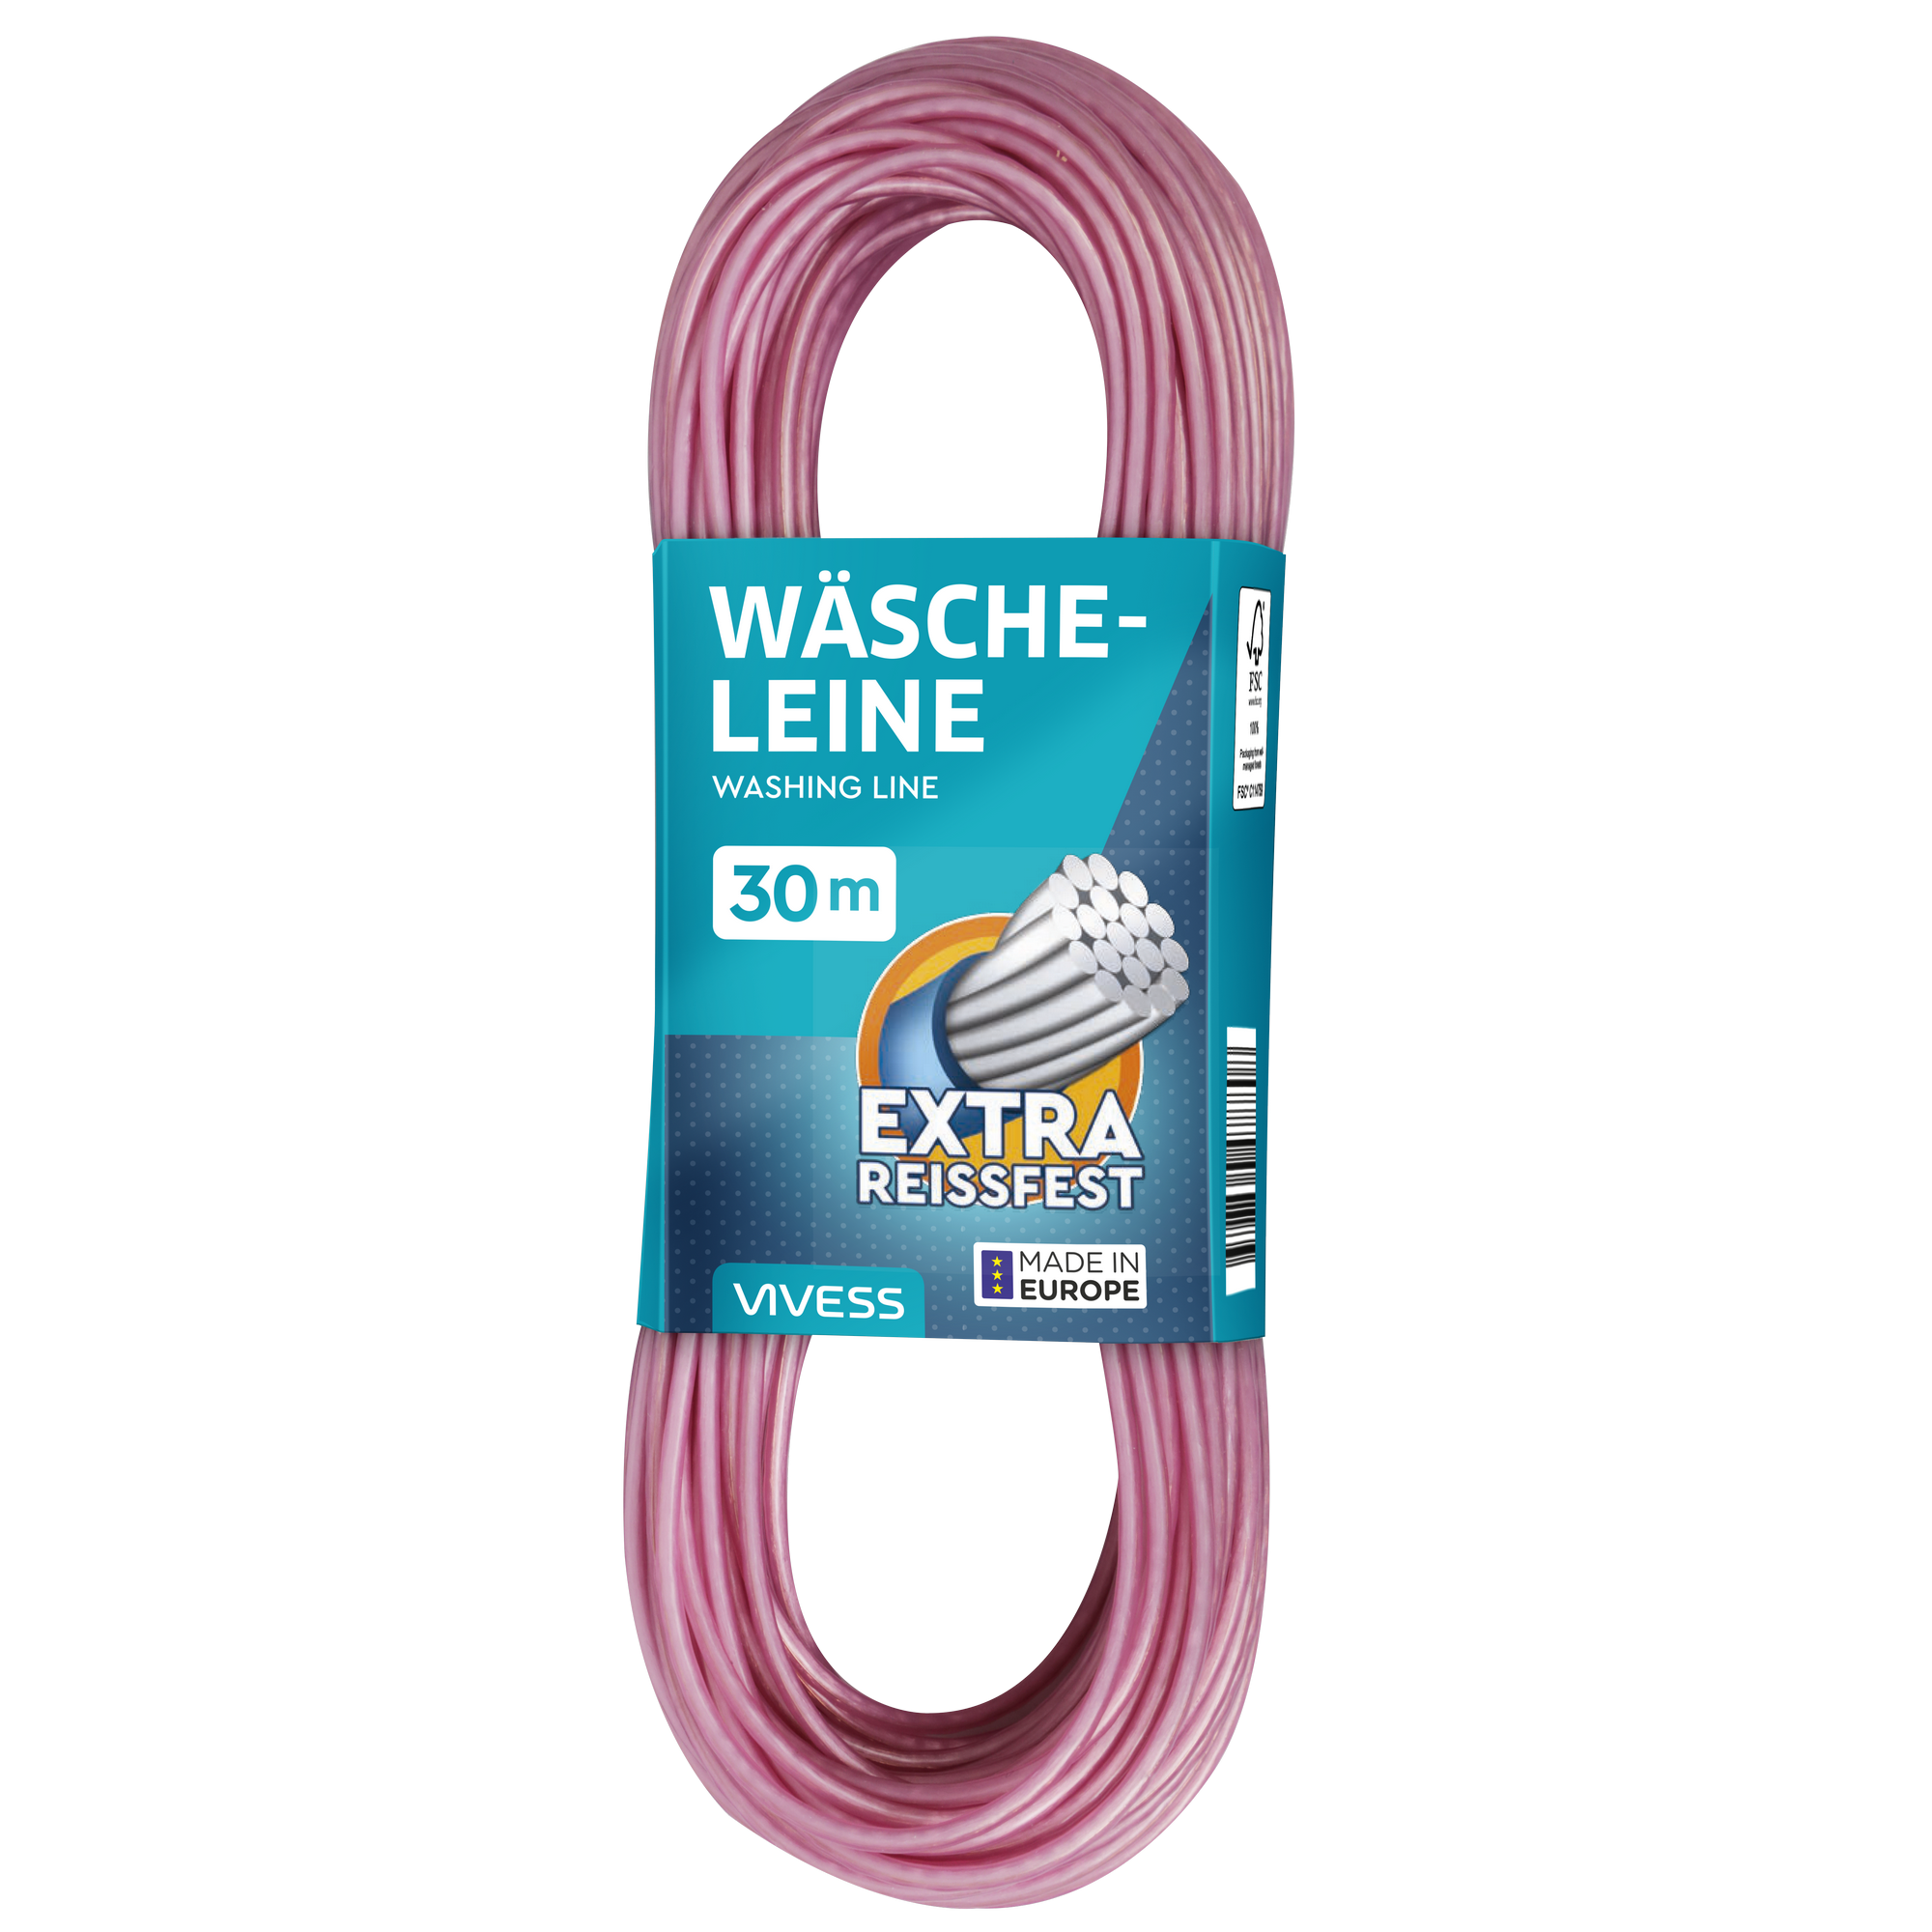 Wäscheleine Polyethylen/Stahldraht 2 Farben sortiert 30 m + product picture